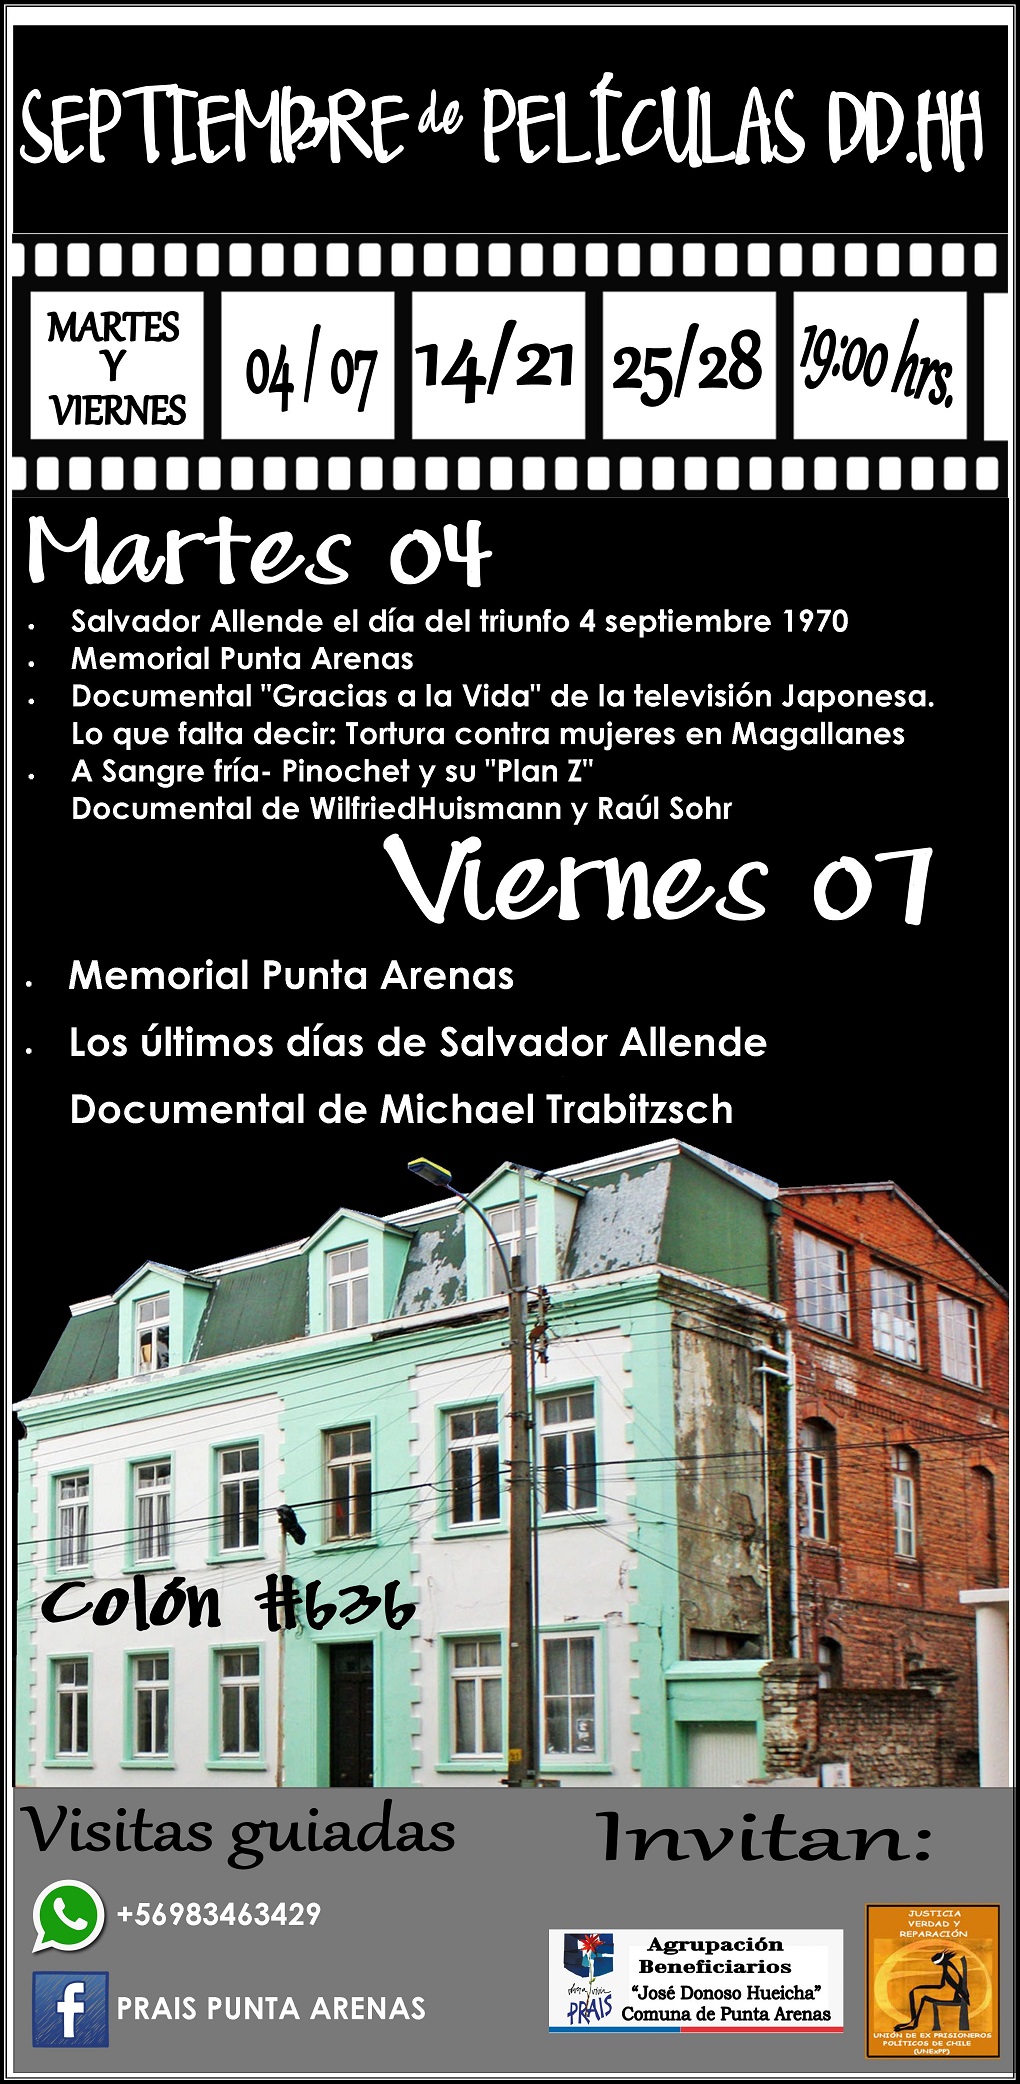 Durante el mes de septiembre se exhibirán películas en Casa de los Derechos Humanos de Punta Arenas